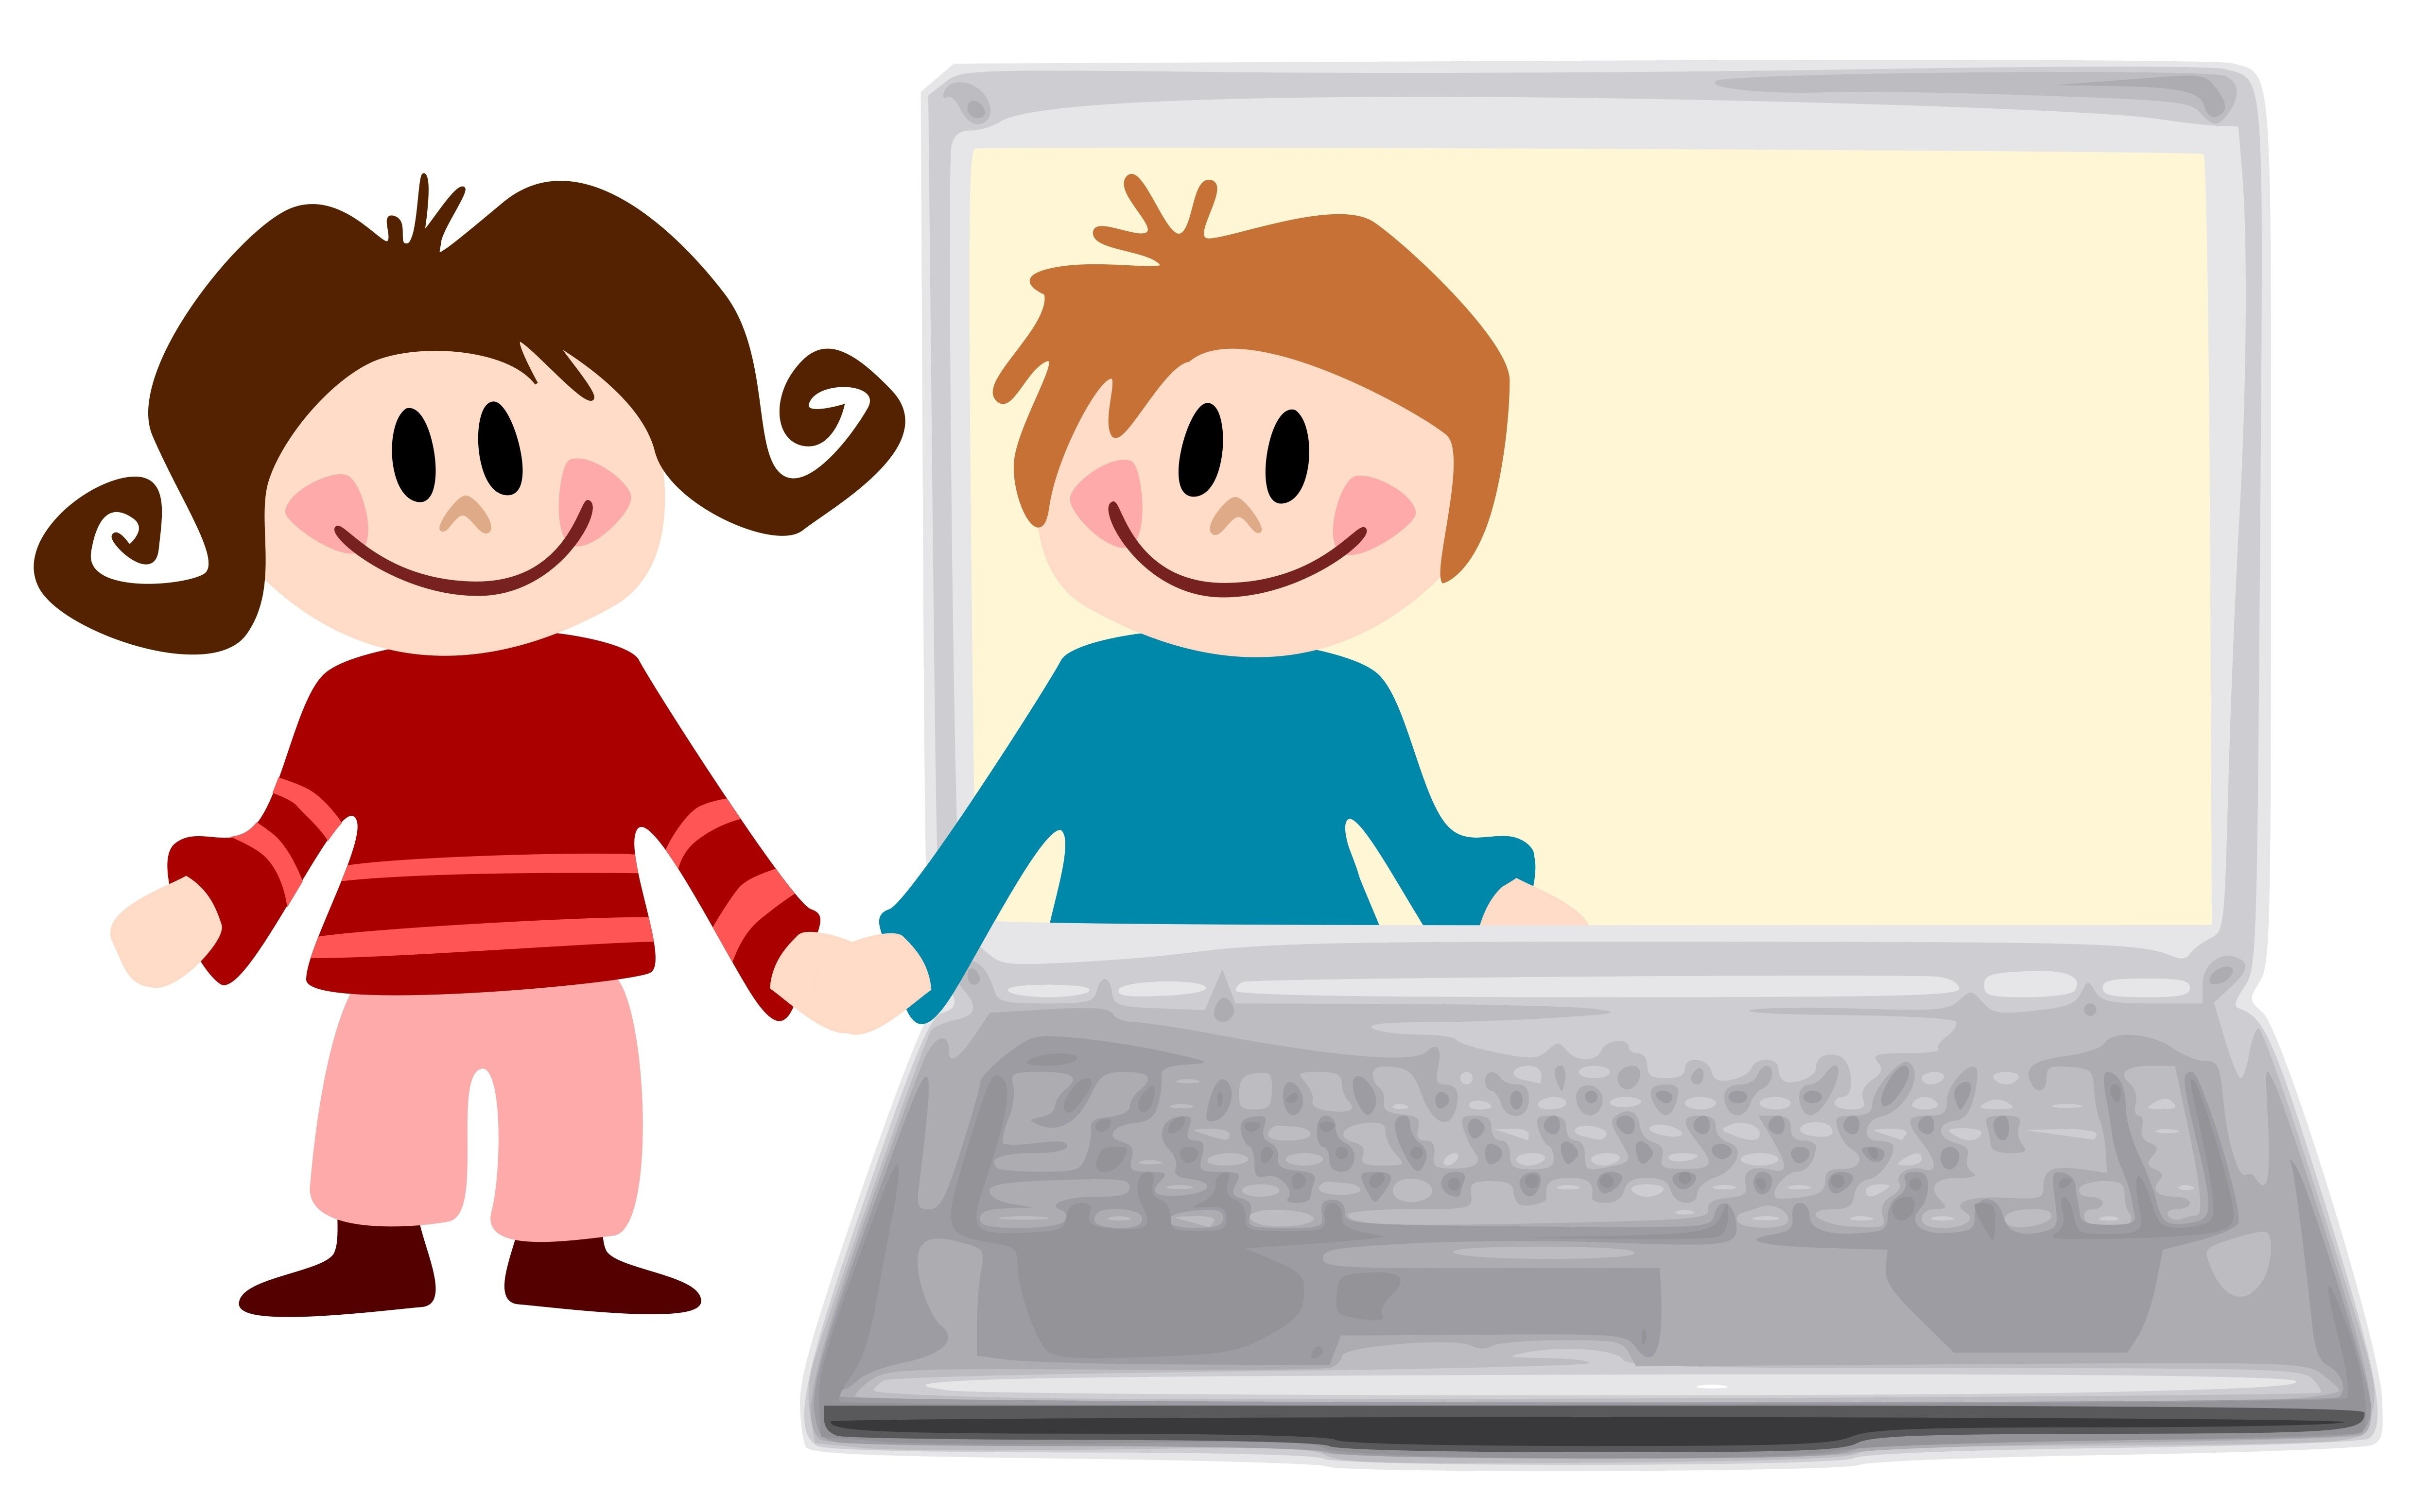 Друг user. Детям об интернете. Компьютер для детей. Общение в интернете. Компьютер интернет дети.